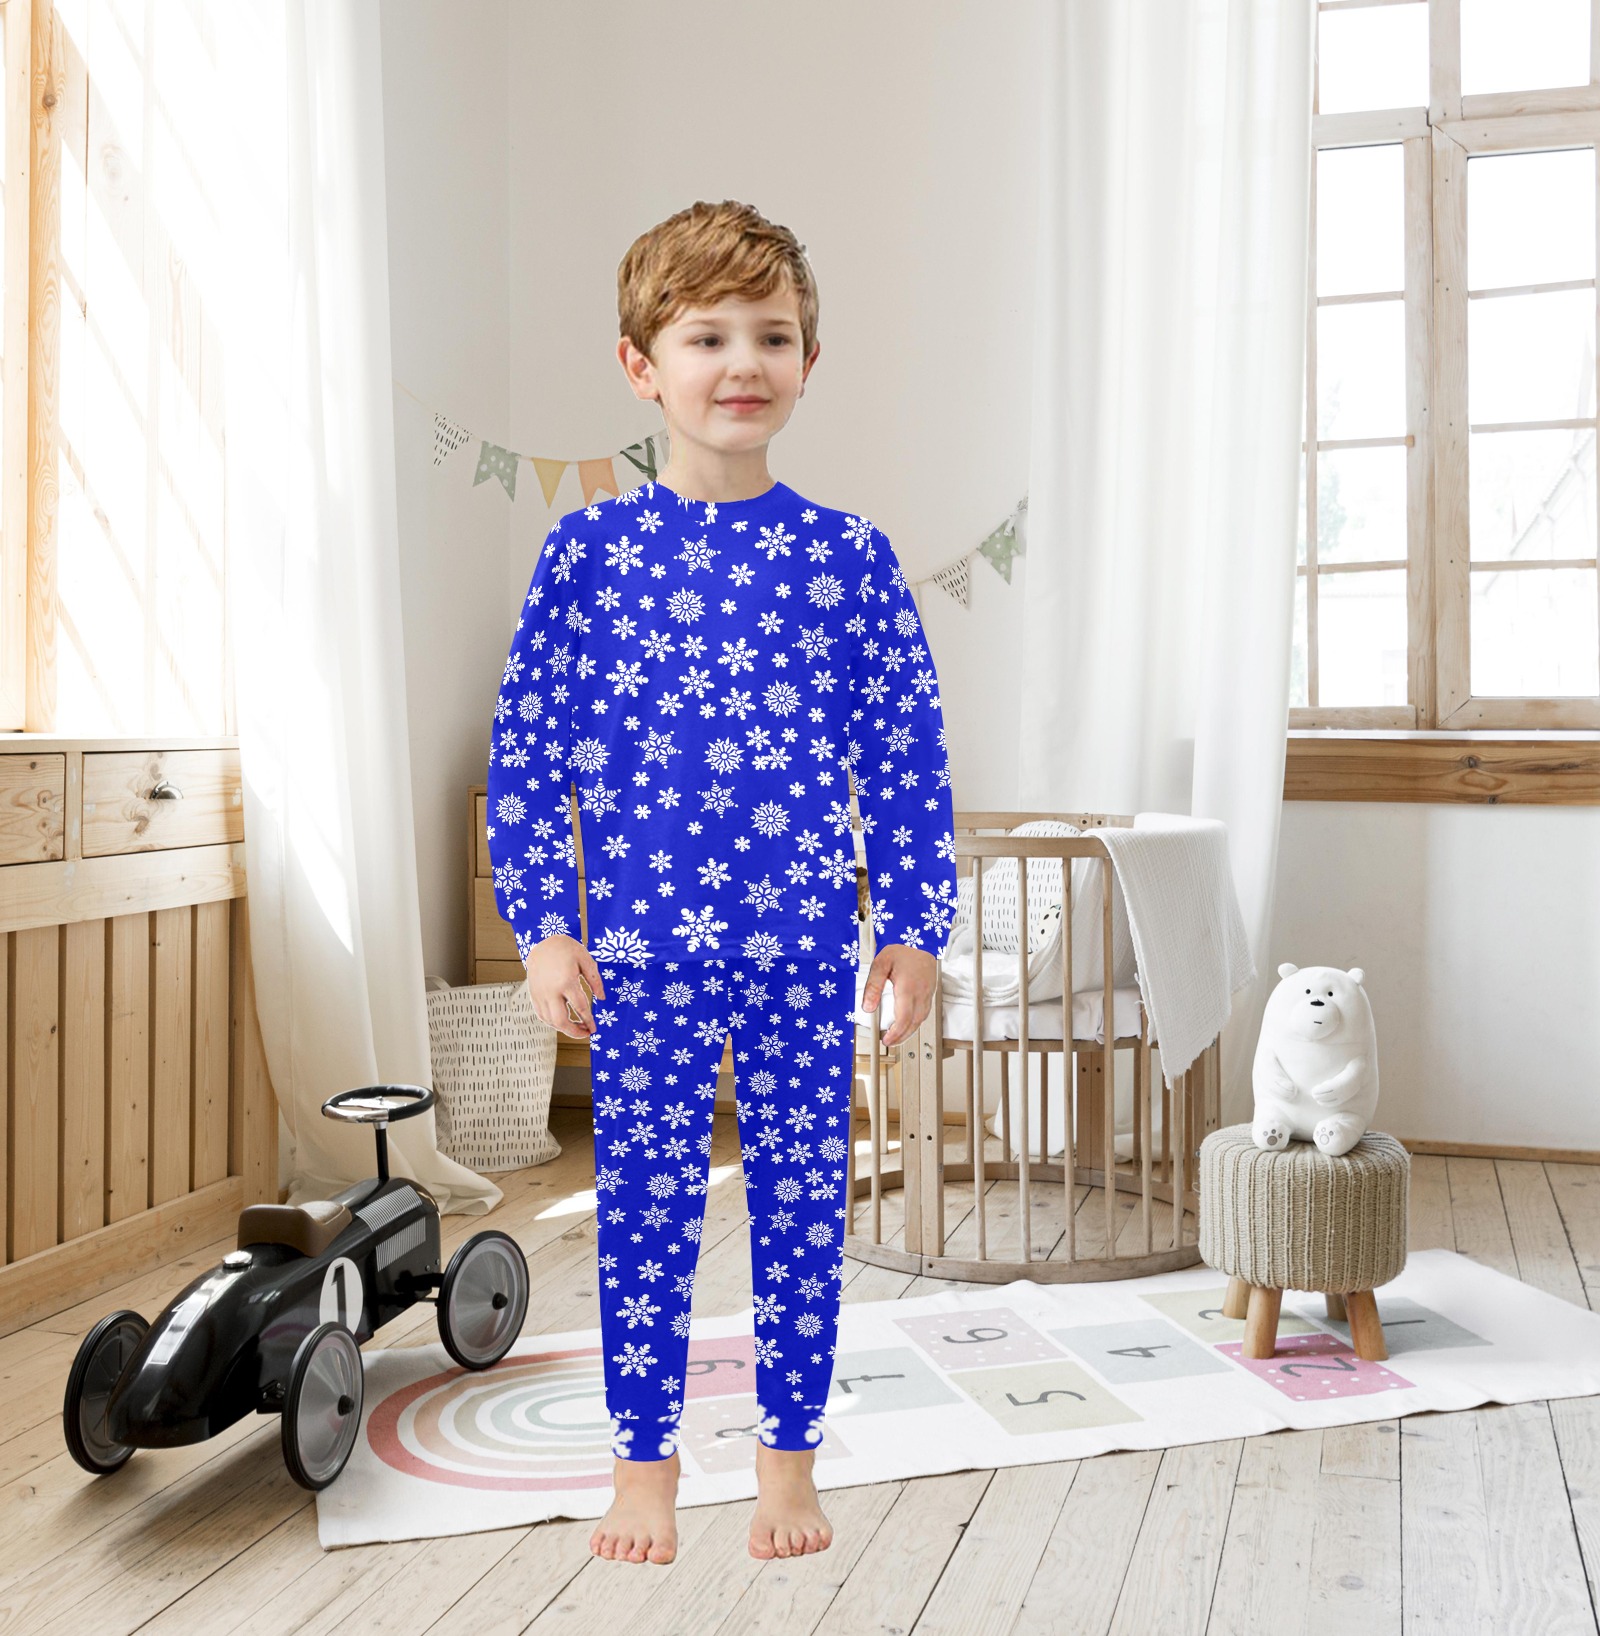 Christmas White Snowflakes on Blue Little Boys' Crew Neck Long Pajama Set